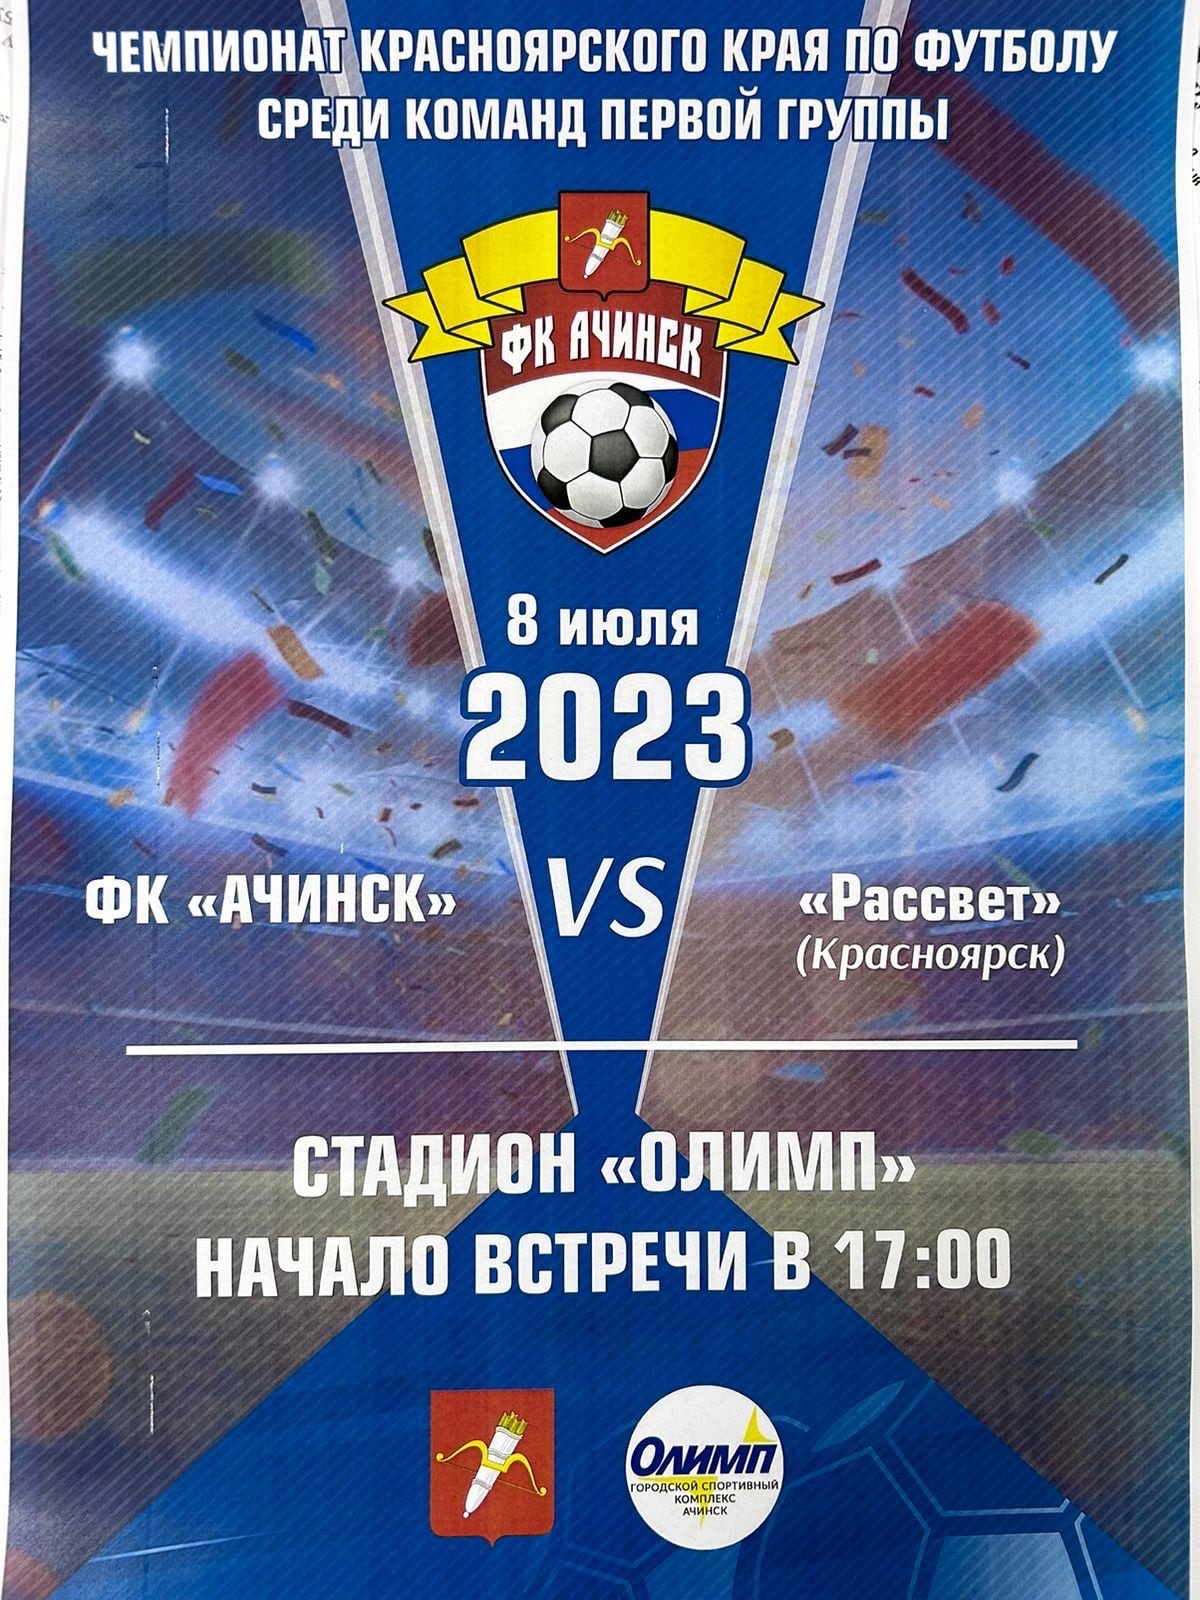 В Ачинске проходит чемпионат Красноярского края по футболу среди команд первой группы 2023 года.